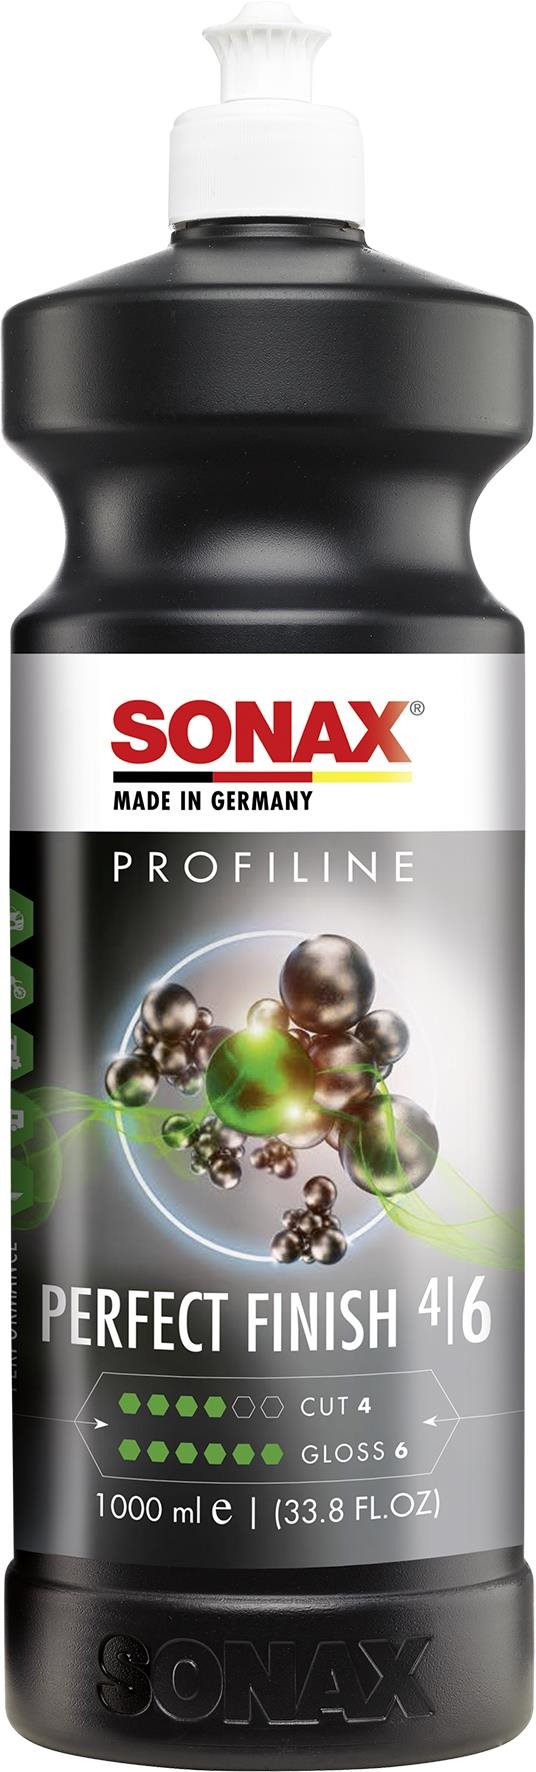 Sonax Profiline Perfect Finish 4/6